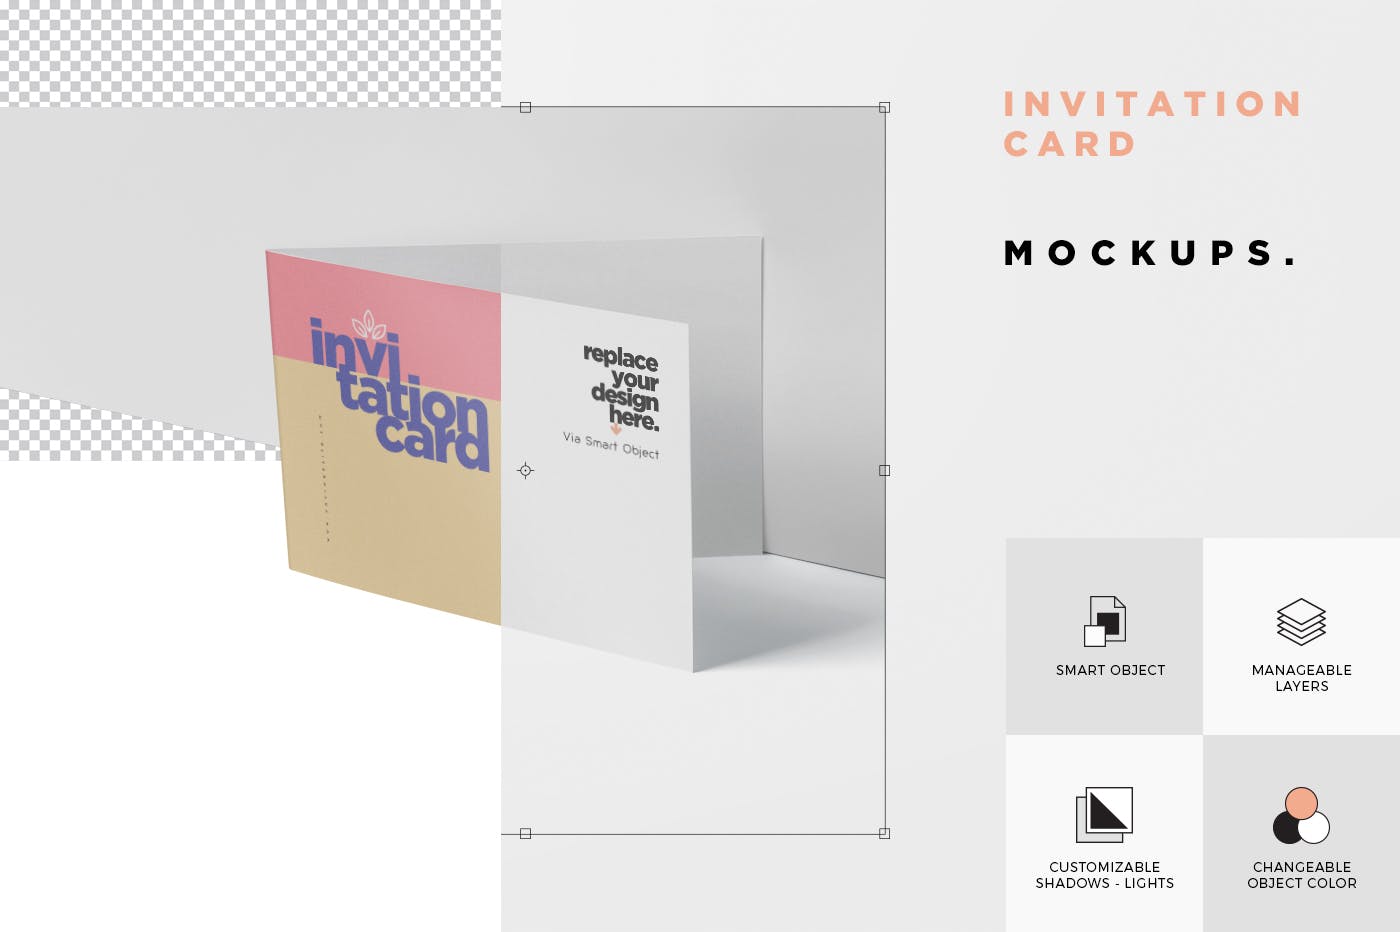 创意邀请卡/邀请函设计图样机非凡图库精选 Invitation Card Mock-Up Set插图(5)